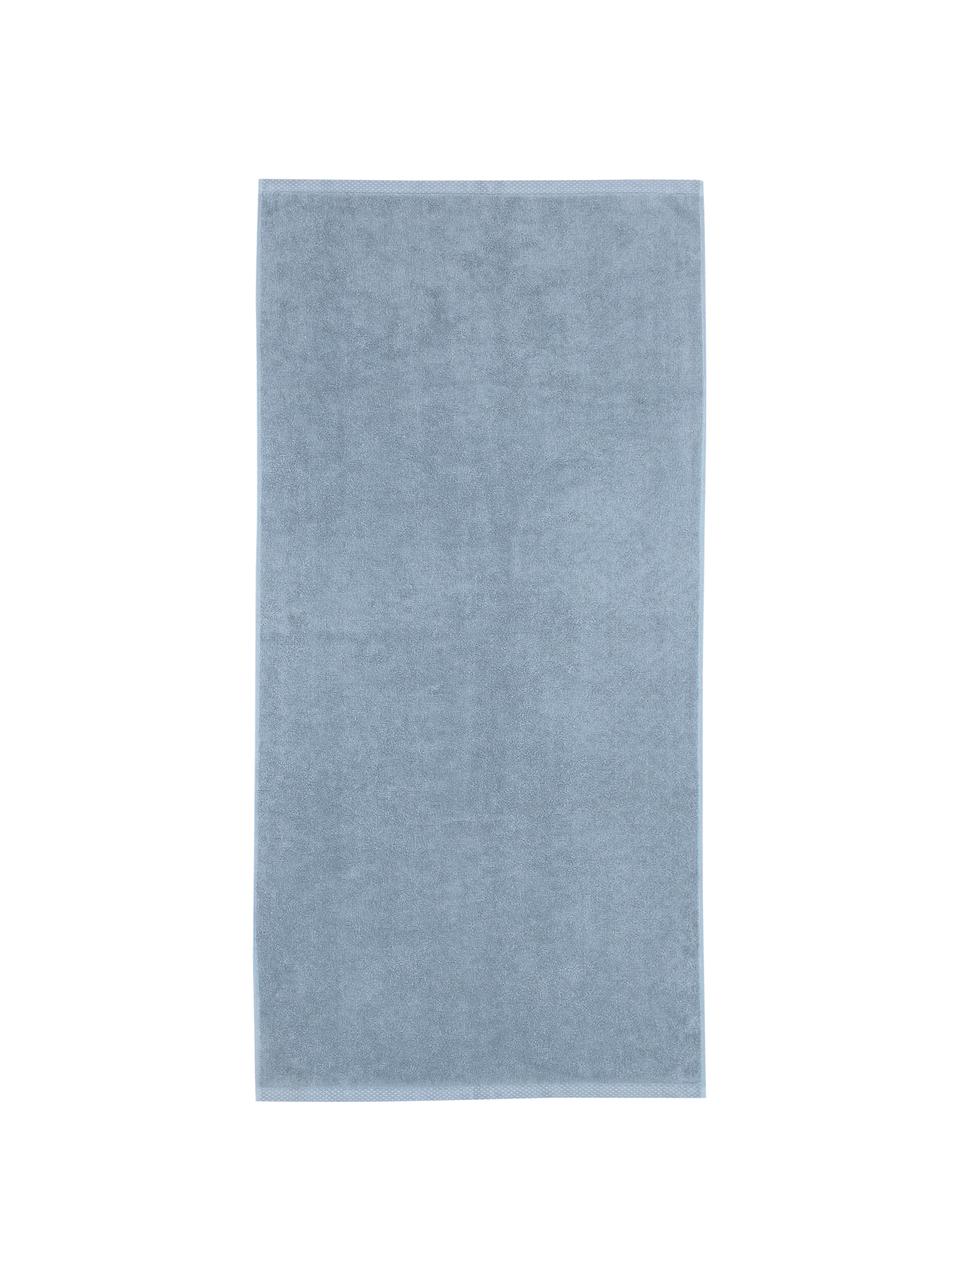 Jednobarevný ručník Comfort, různé velikosti, Světle modrá, Ručník, Š 50 cm, D 100 cm, 2 ks